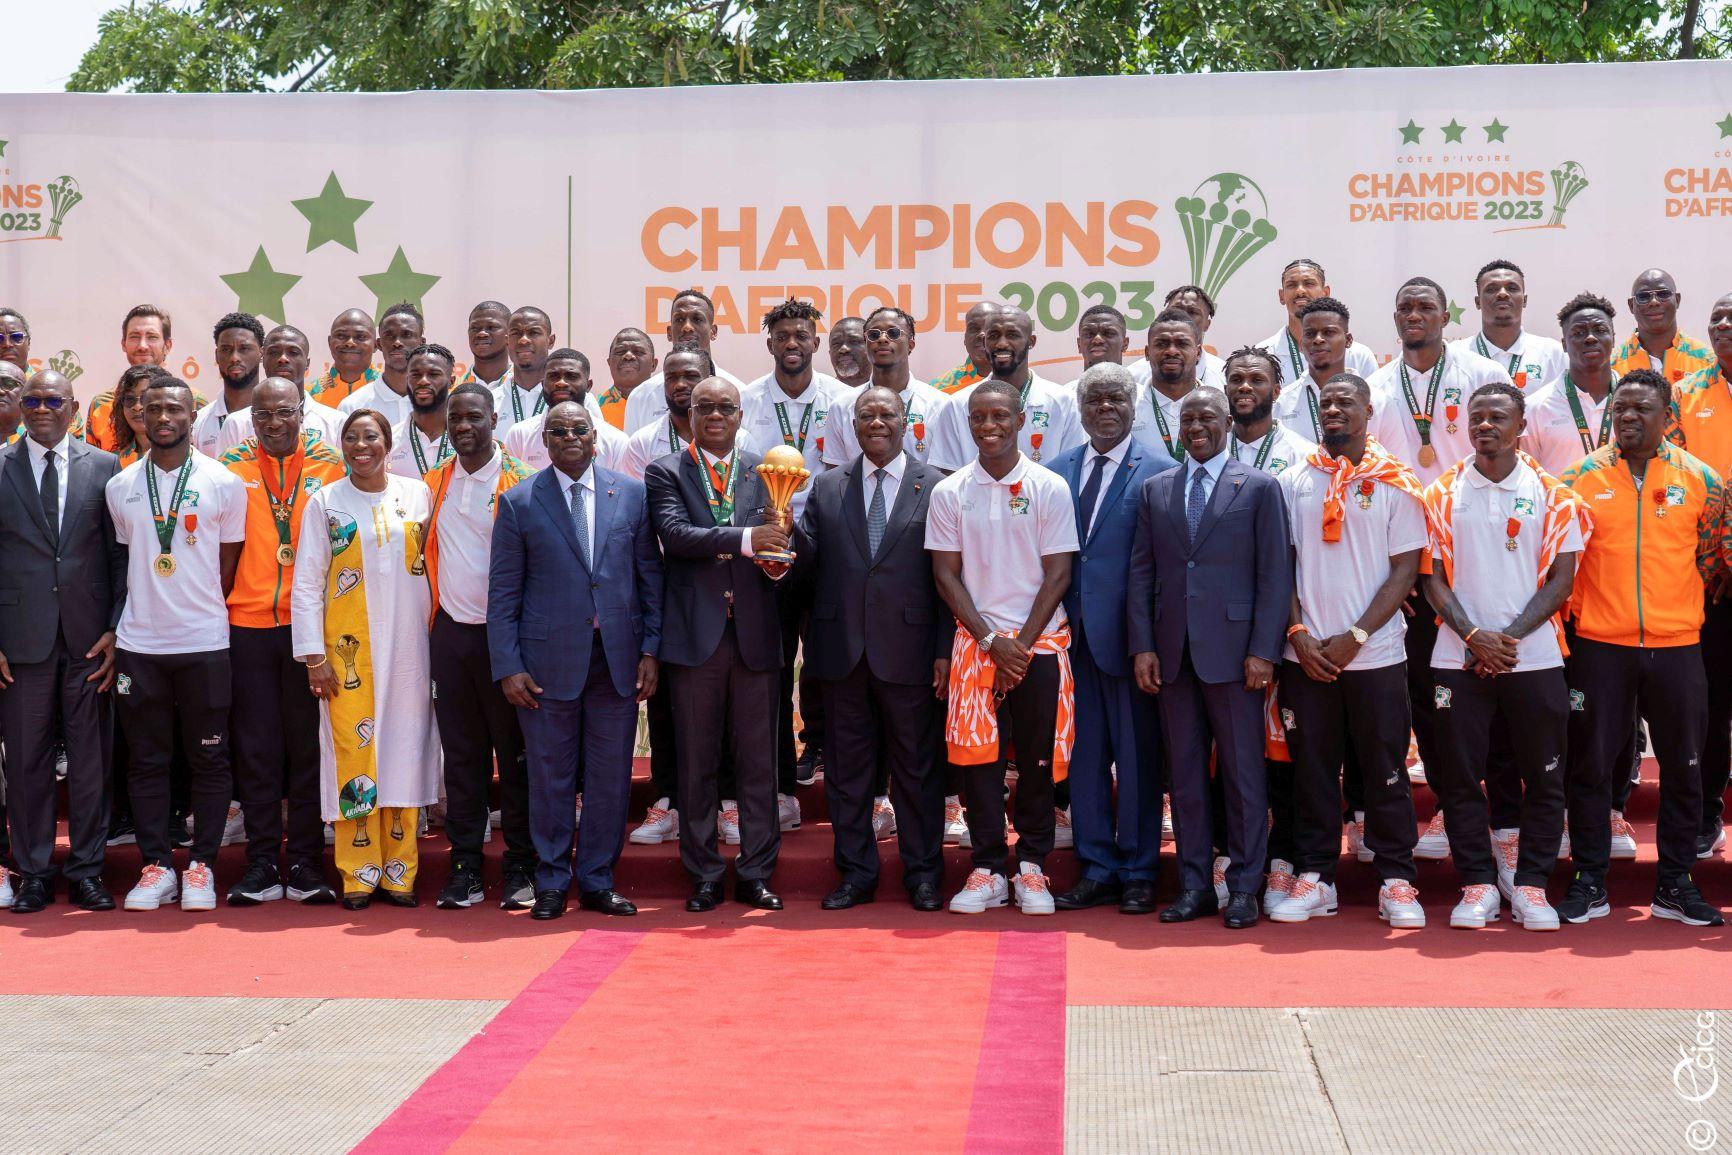 Le président ivoirien, Ouattara exprime la reconnaissance de l’Etat à l’équipe nationale de football, championne de la CAN 2023